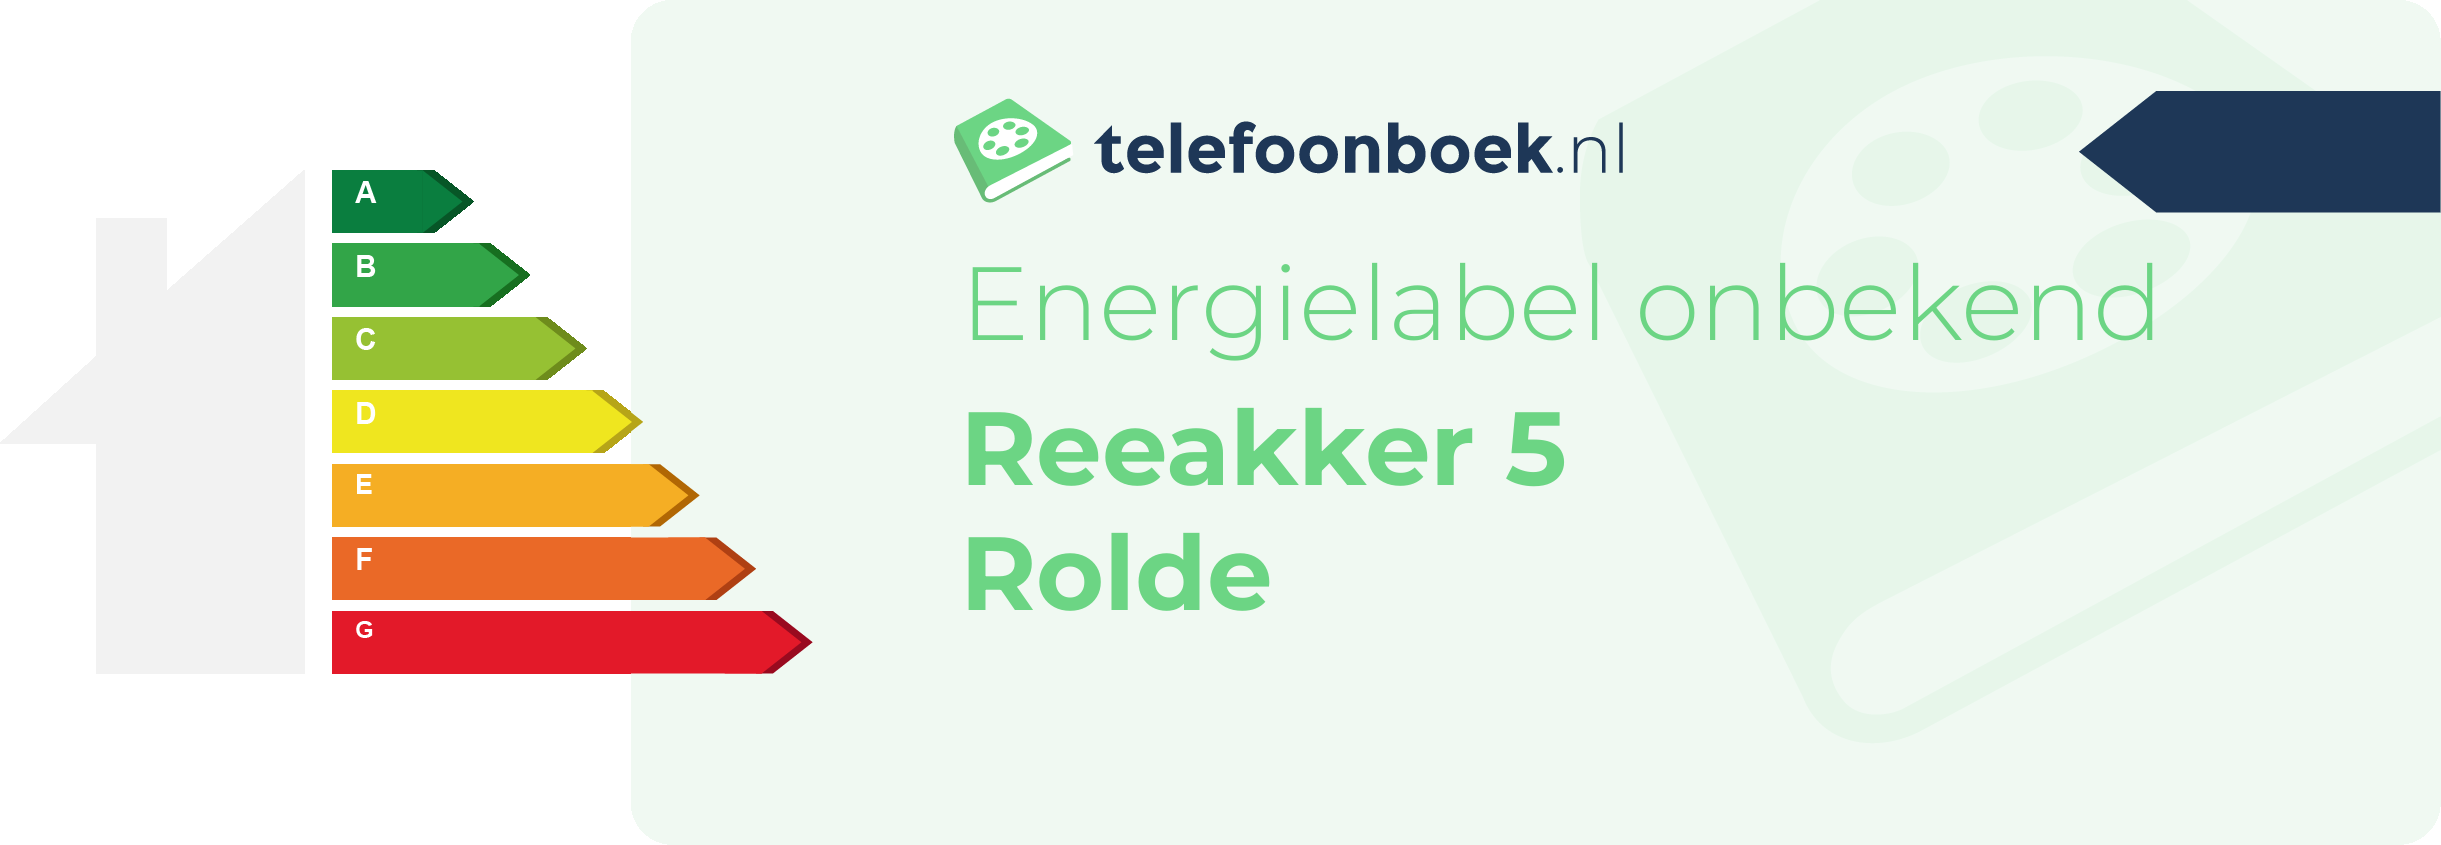 Energielabel Reeakker 5 Rolde